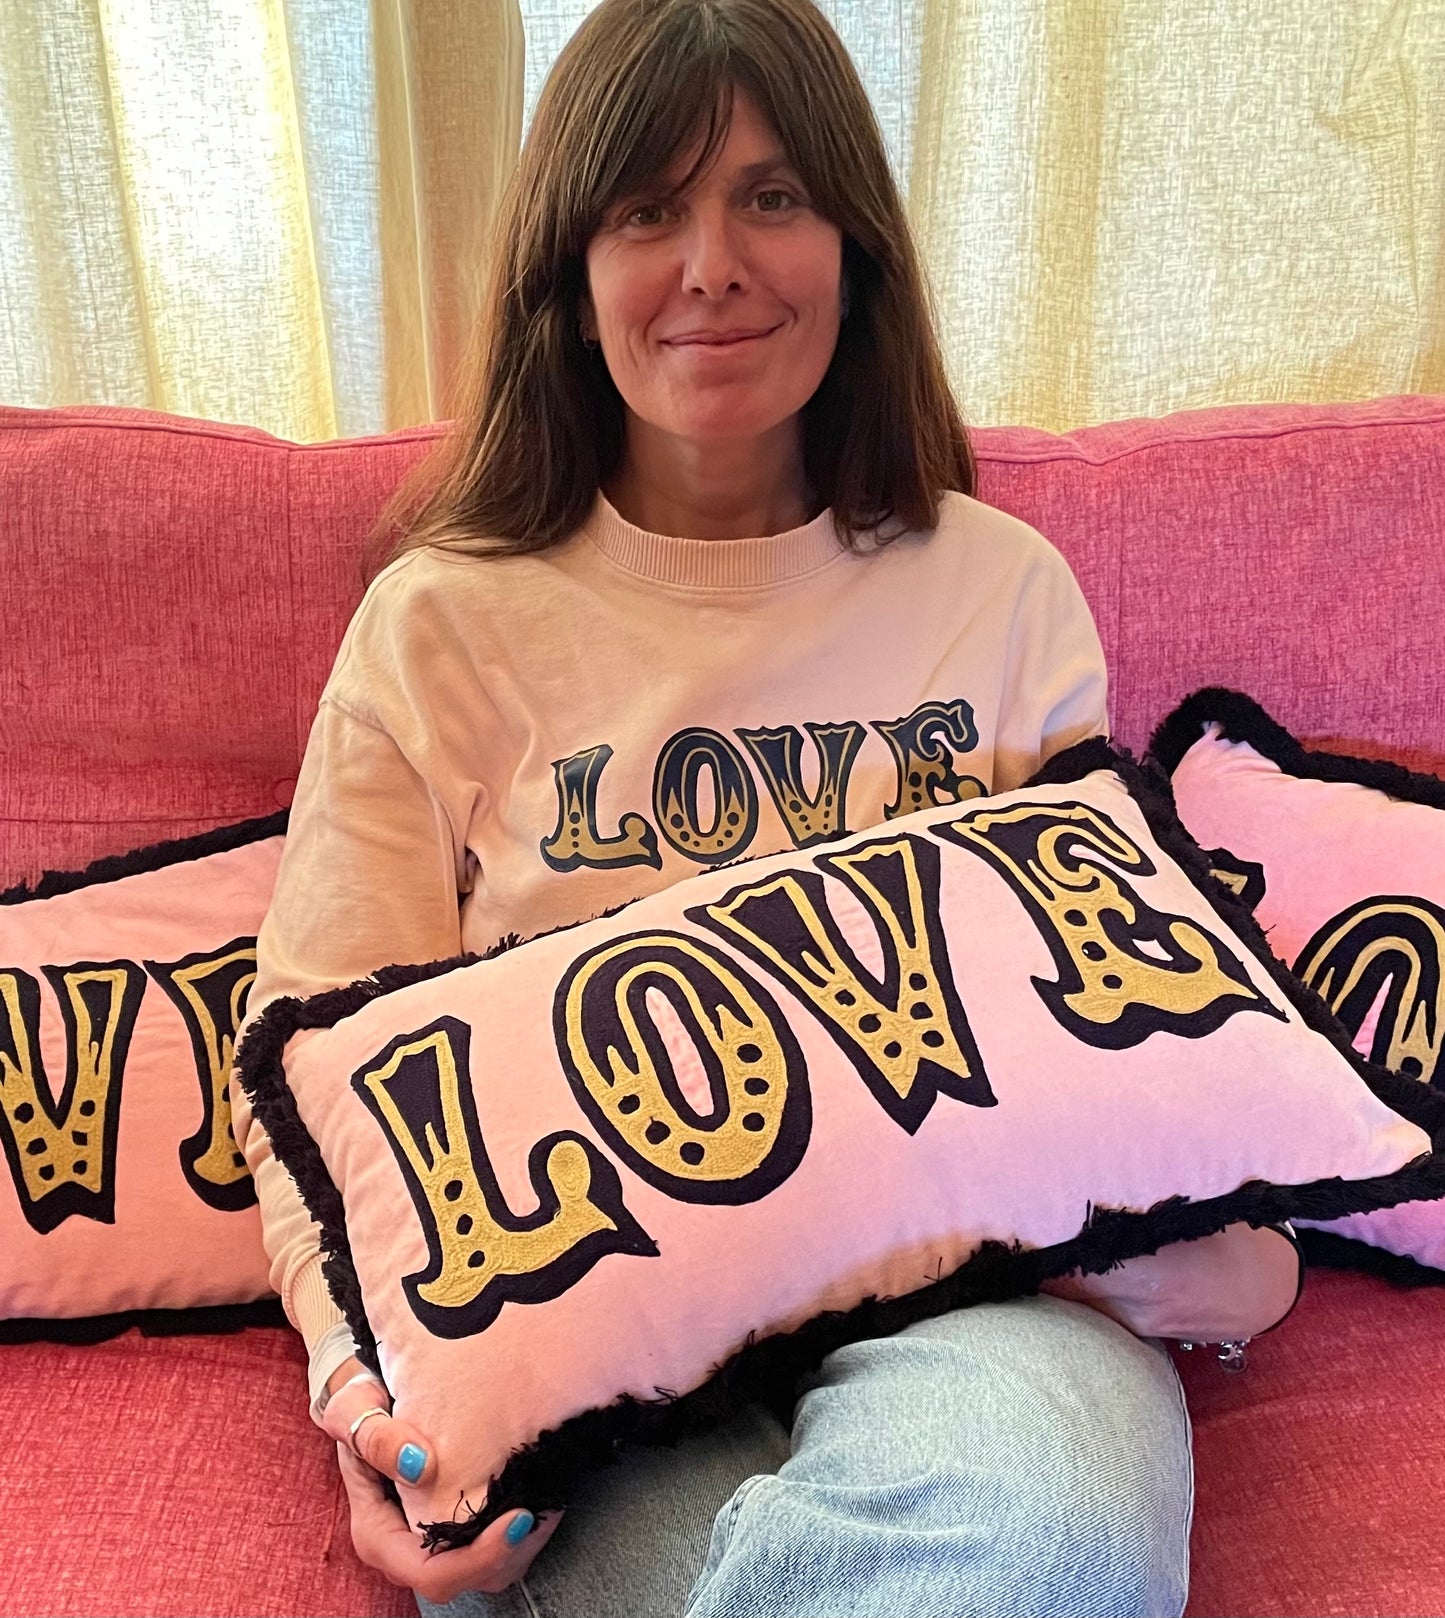 Plush Pink Velvet Love Cushion